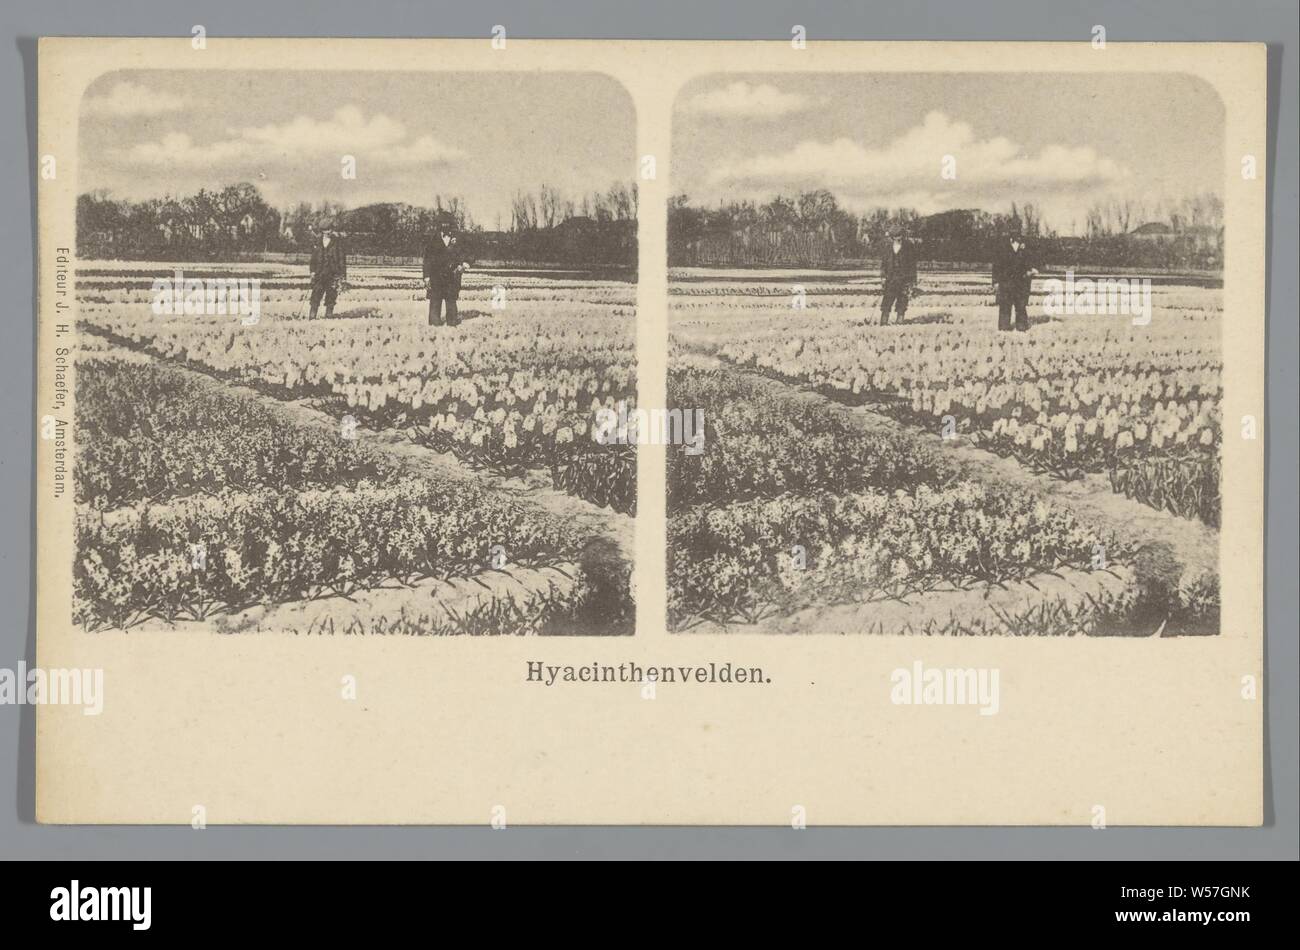 Hyacinth fields, J.H. Schaefer, 1900 - 1940 Stock Photo